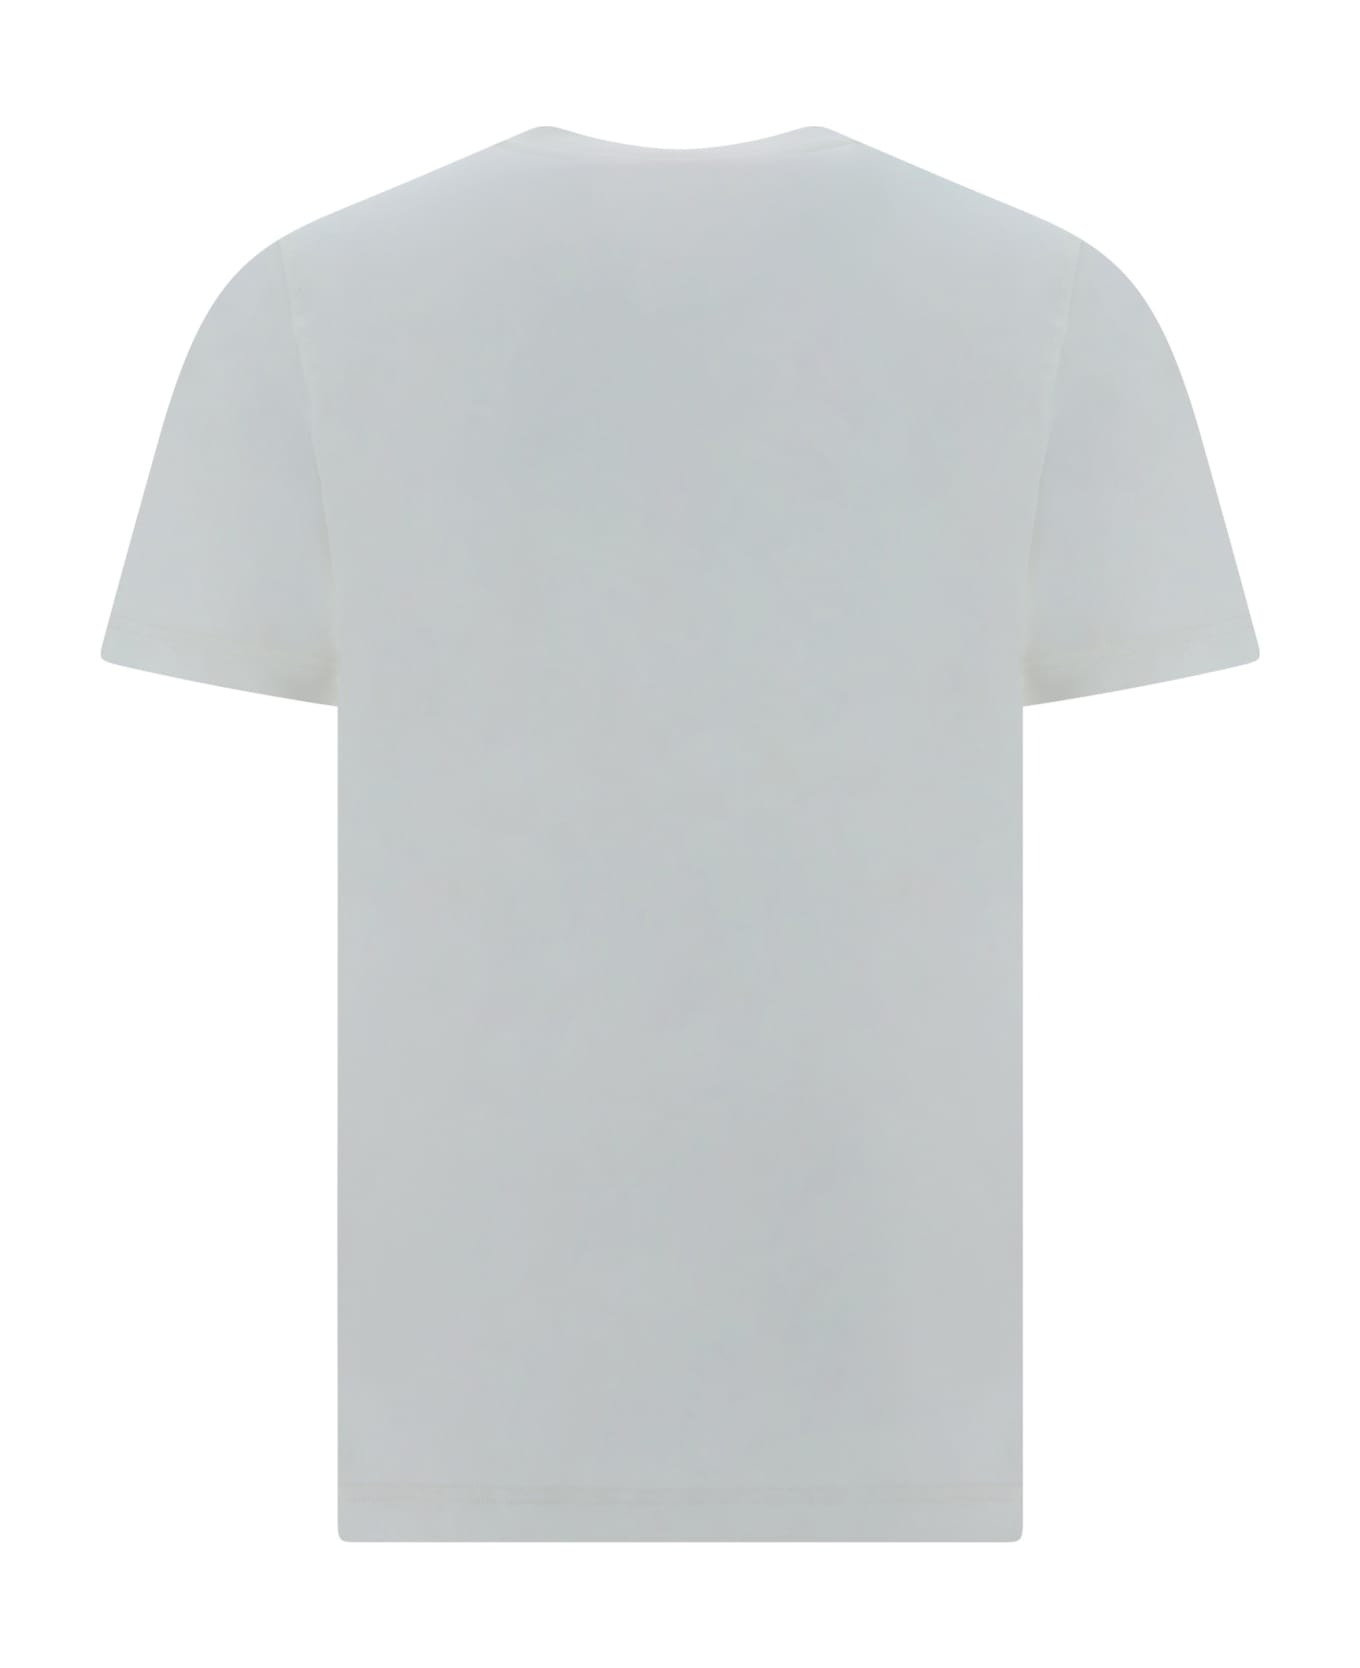 Diesel T-shirt - 104 - Off/white